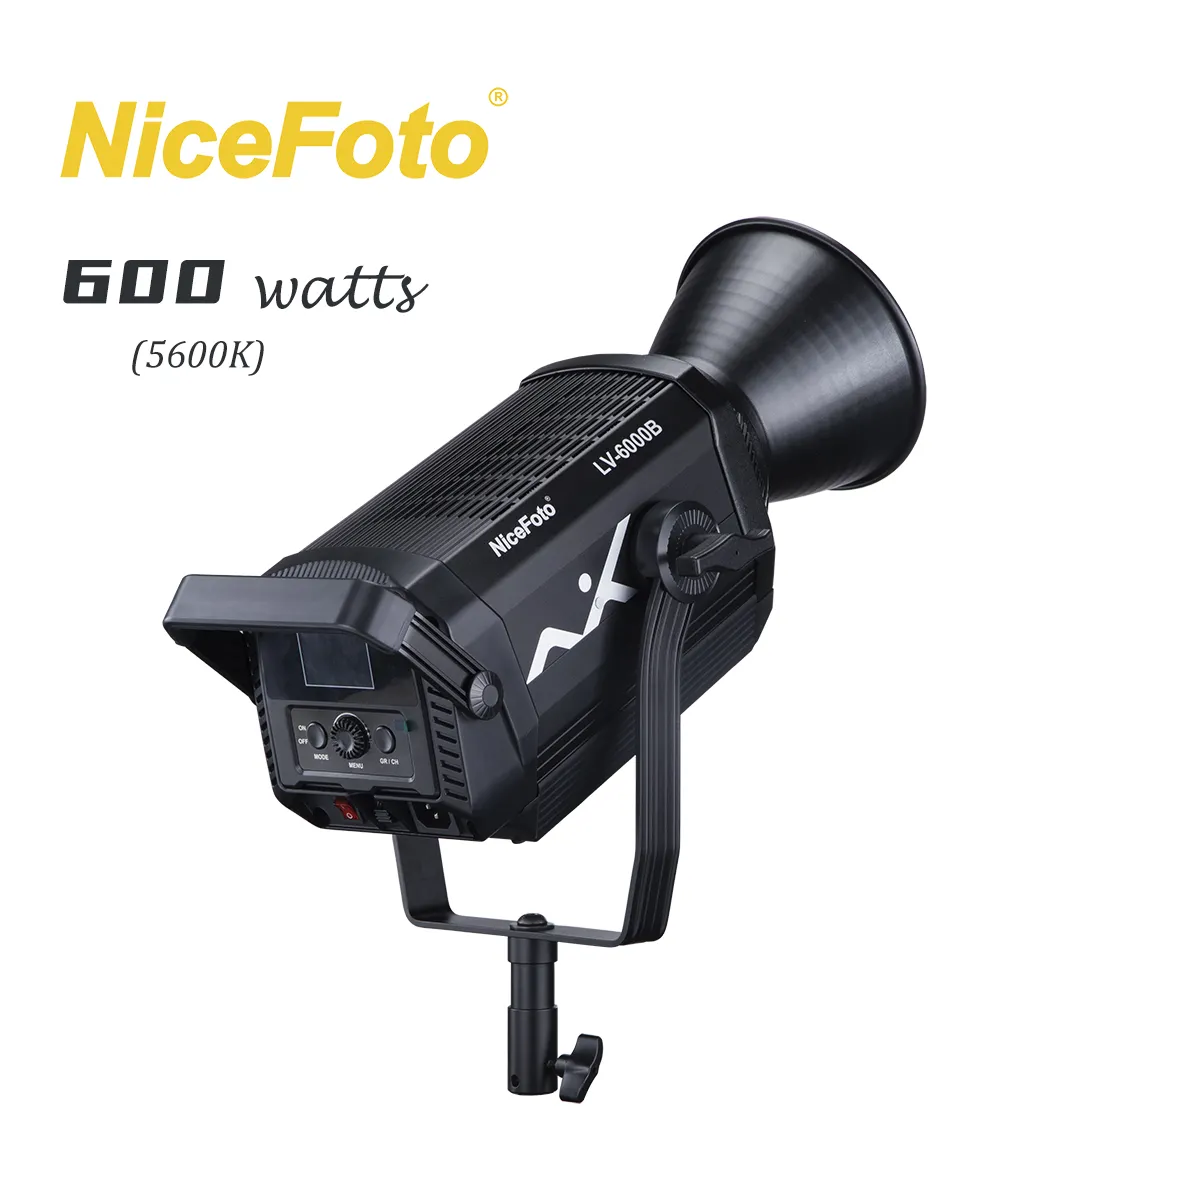 Nicemoto-LV-6000B profesional de 600W, iluminación fotográfica continua, LED COB, montaje Bowens, HD, transmisión en vivo, vídeo, estudio